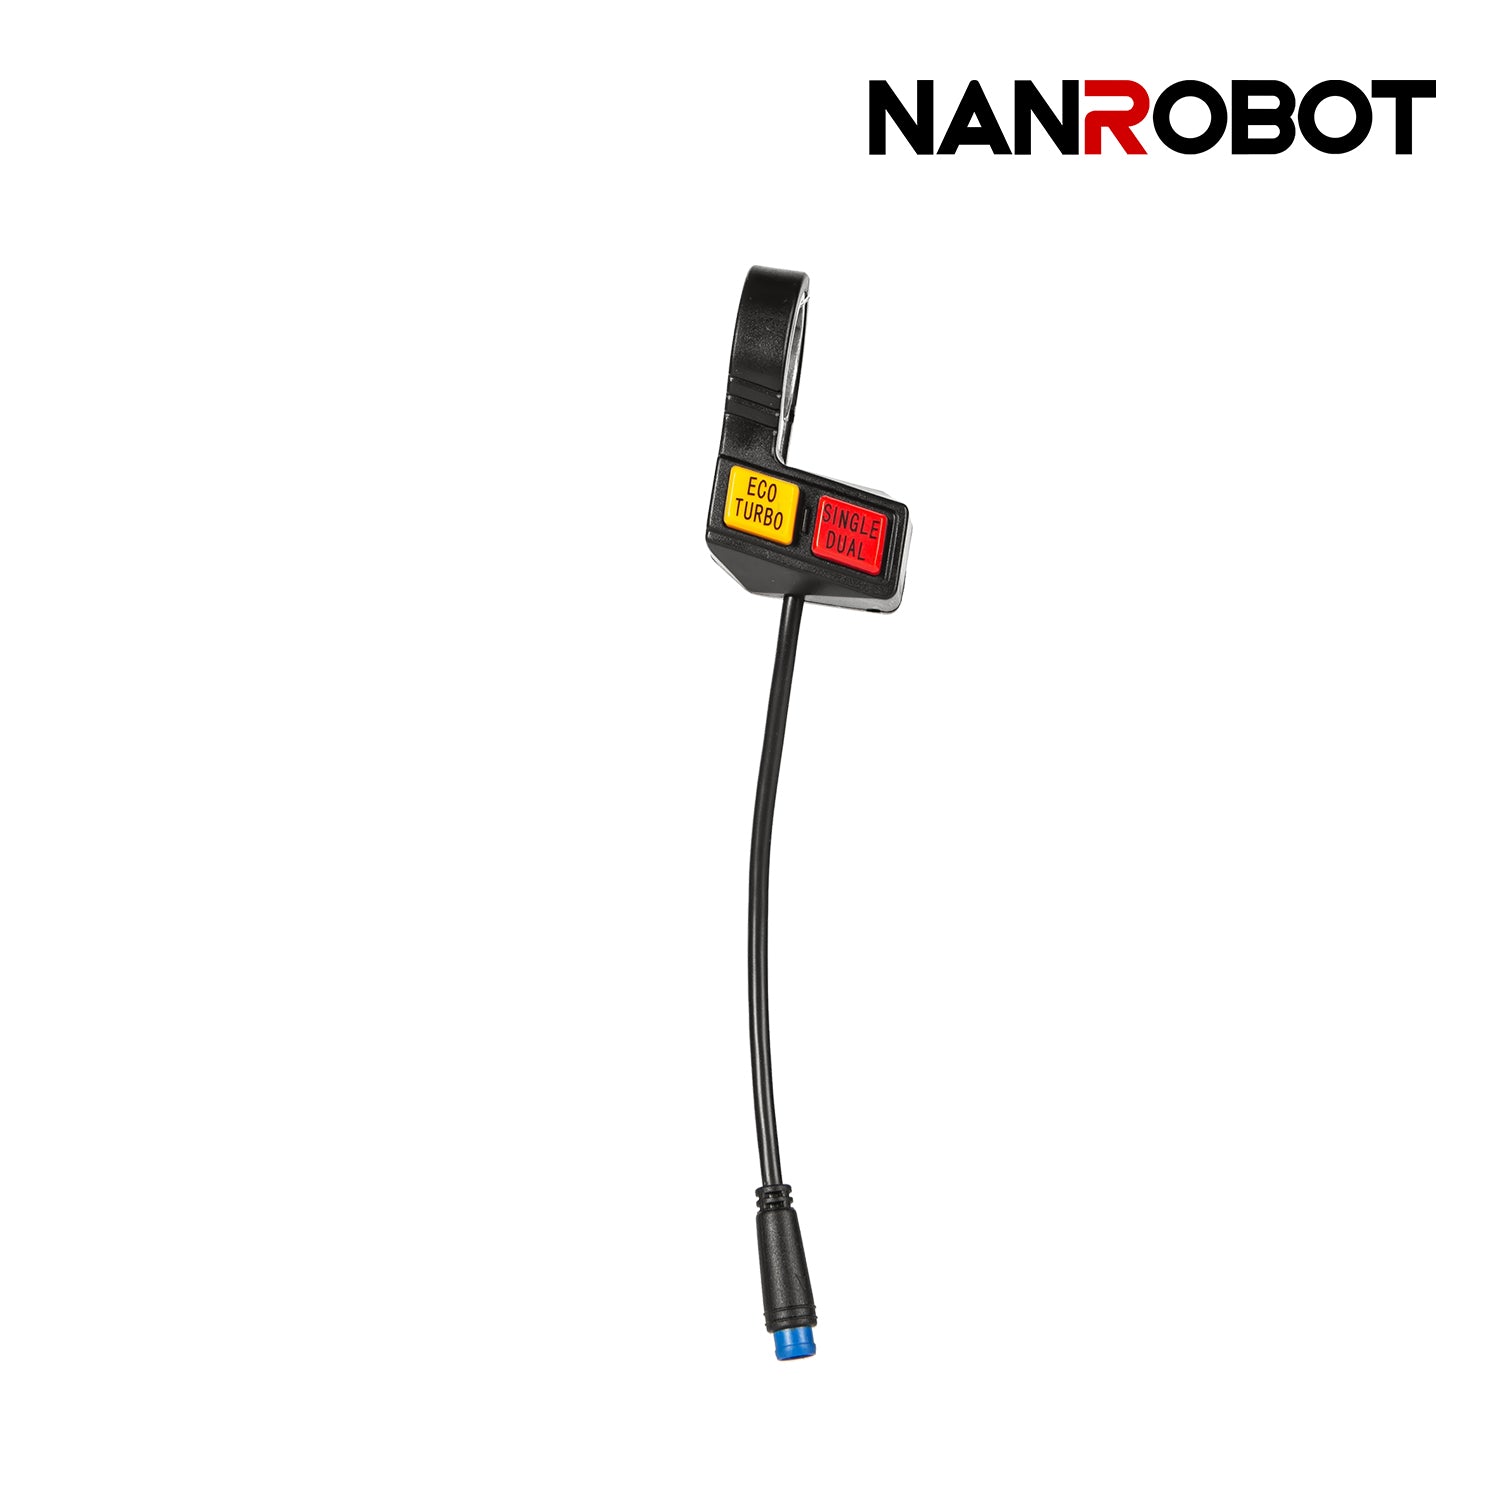 Double drive button - NANROBOT